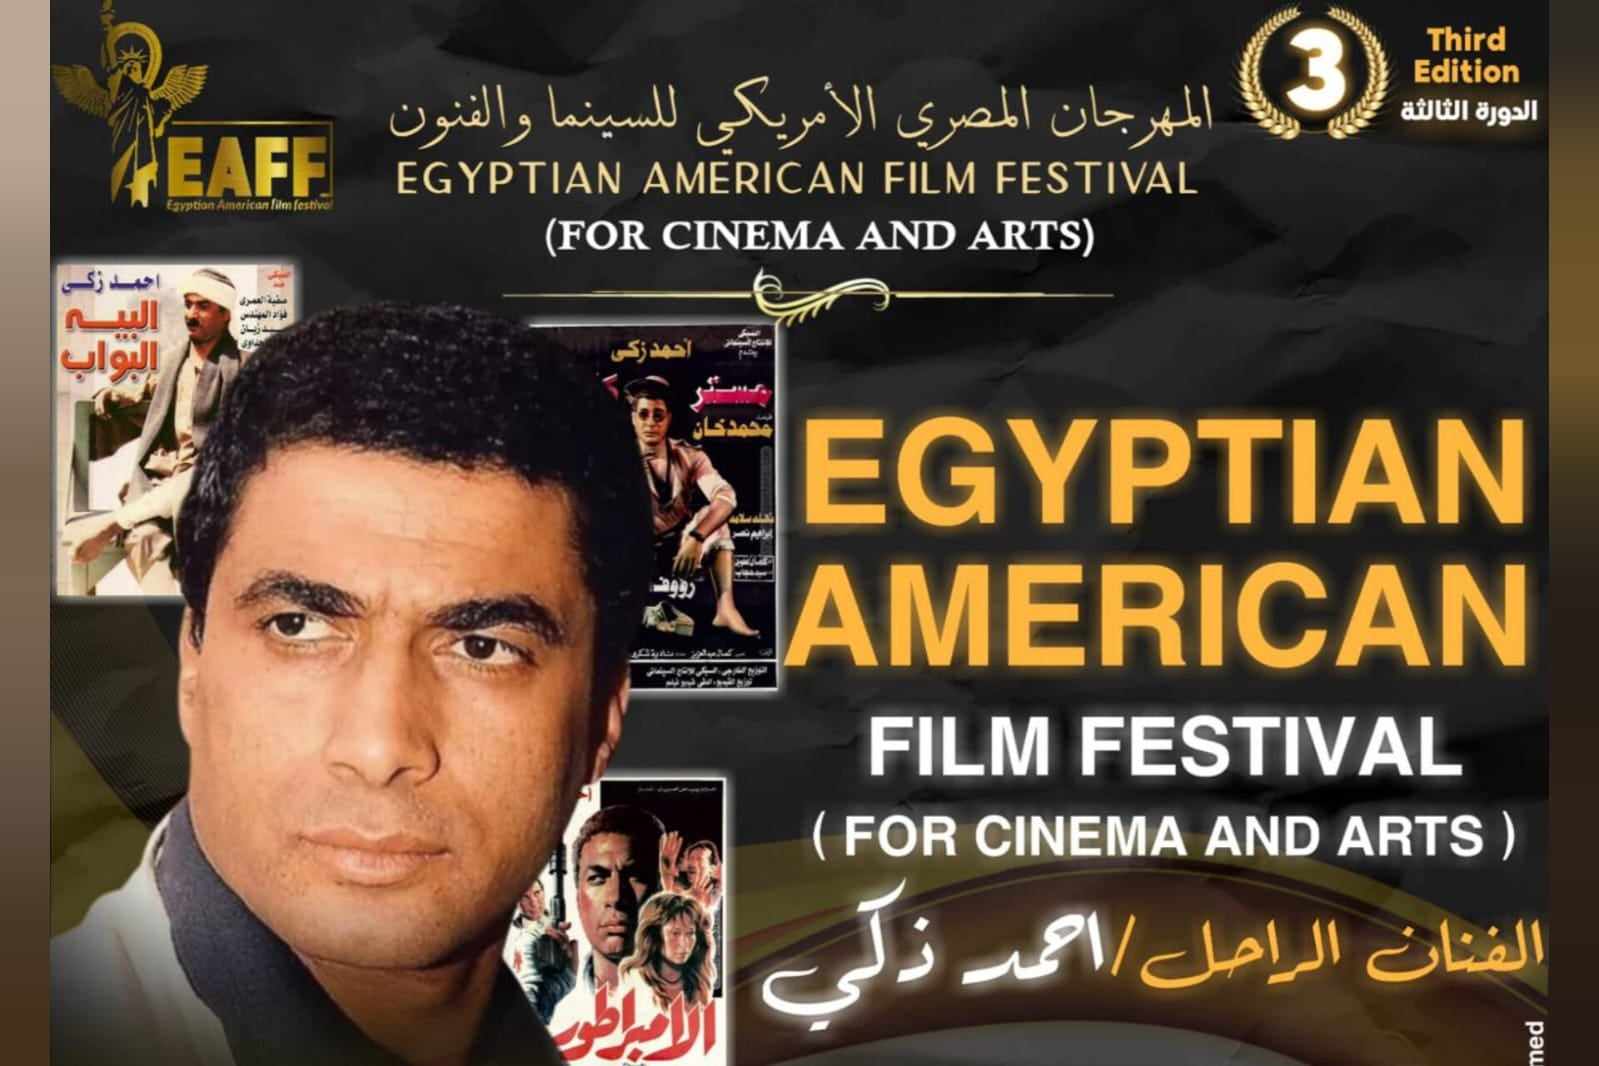 تكريم الفنان الراحل أحمد زكي بالمهرجان المصري الأمريكي للسينما في نيويورك 3 نوفمبر

